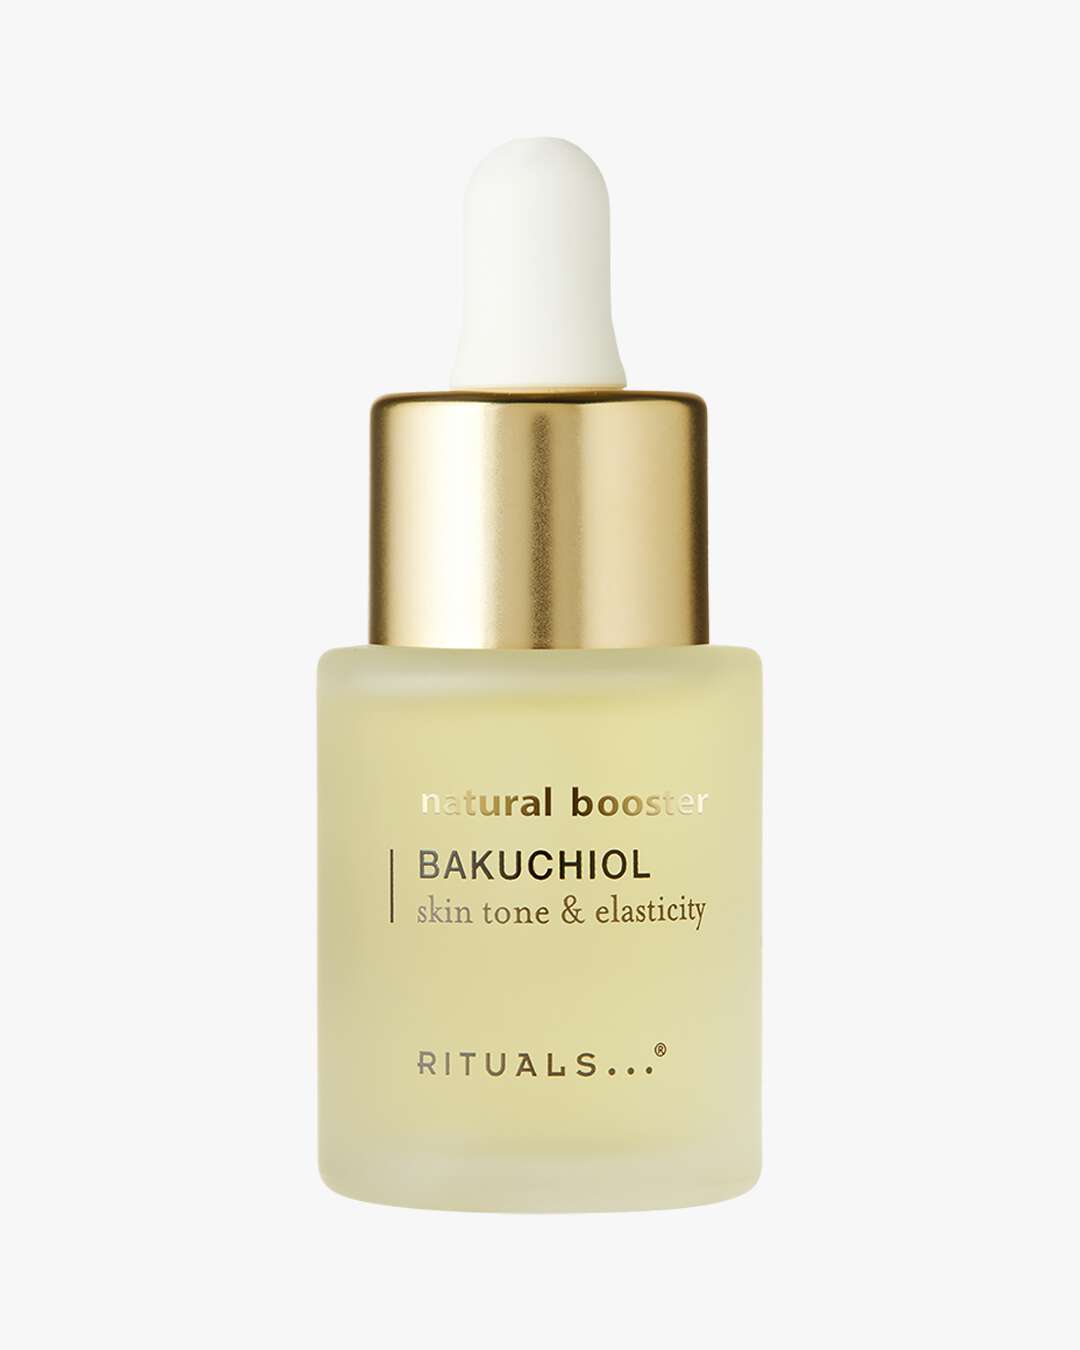 Rituals Cosmetics - Nærende, beroligende og med en nydelig duft – det er  vår naturlige håndpleie i et nøtteskall. Hold hendene sunne og myke mens du  nyter din favoritt Rituals-duft.